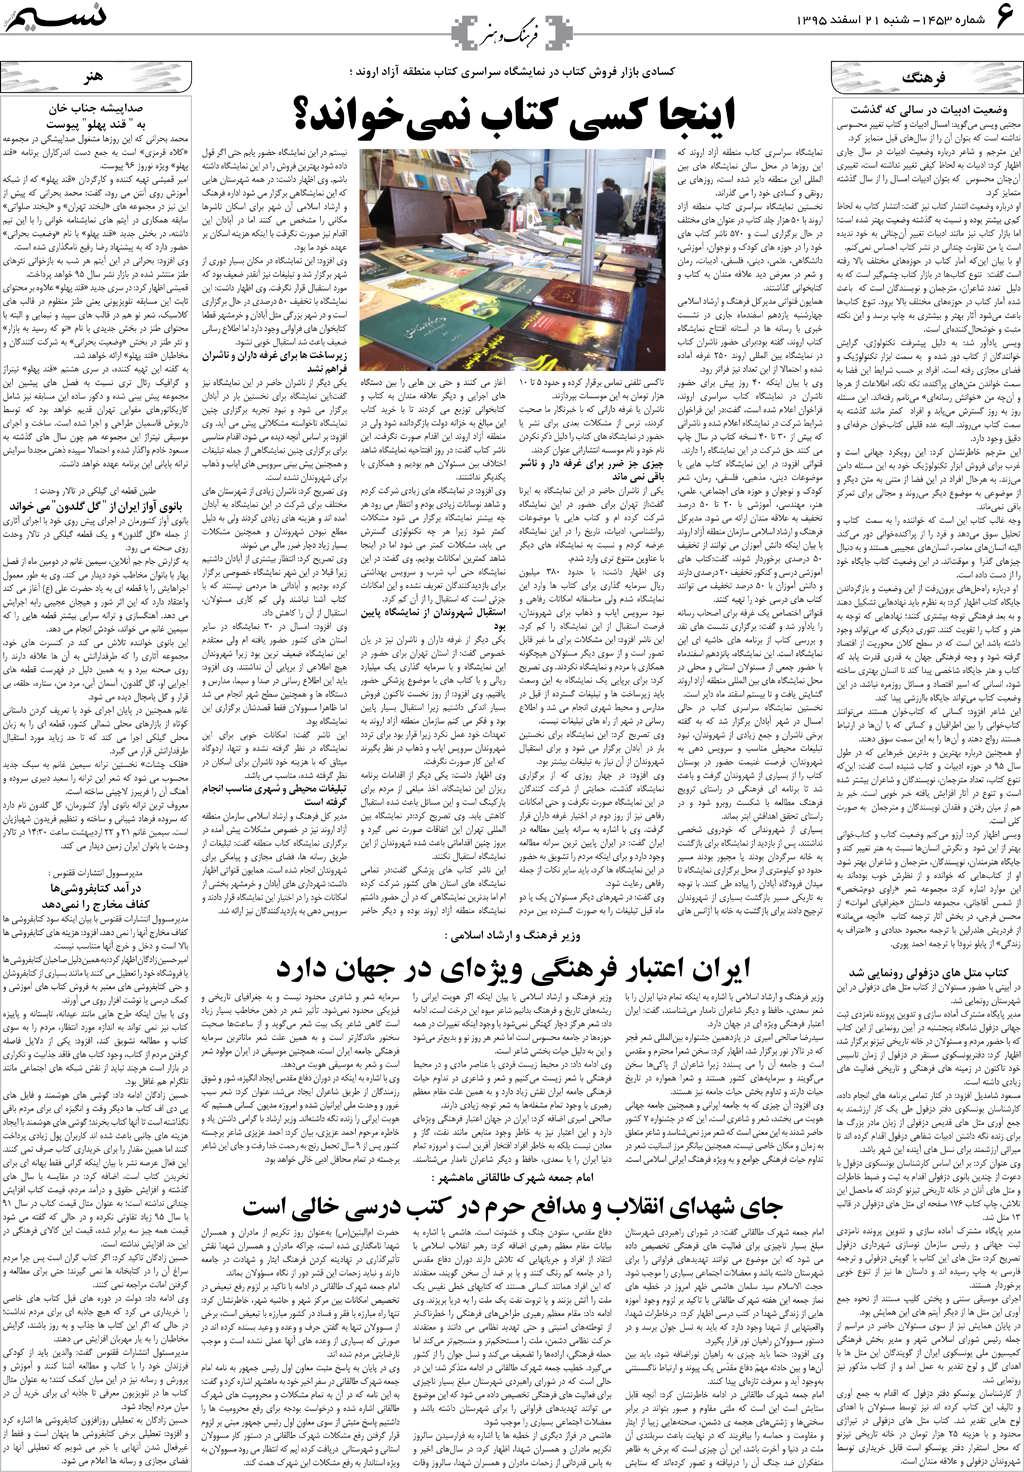 صفحه فرهنگ و هنر روزنامه نسیم شماره 1453